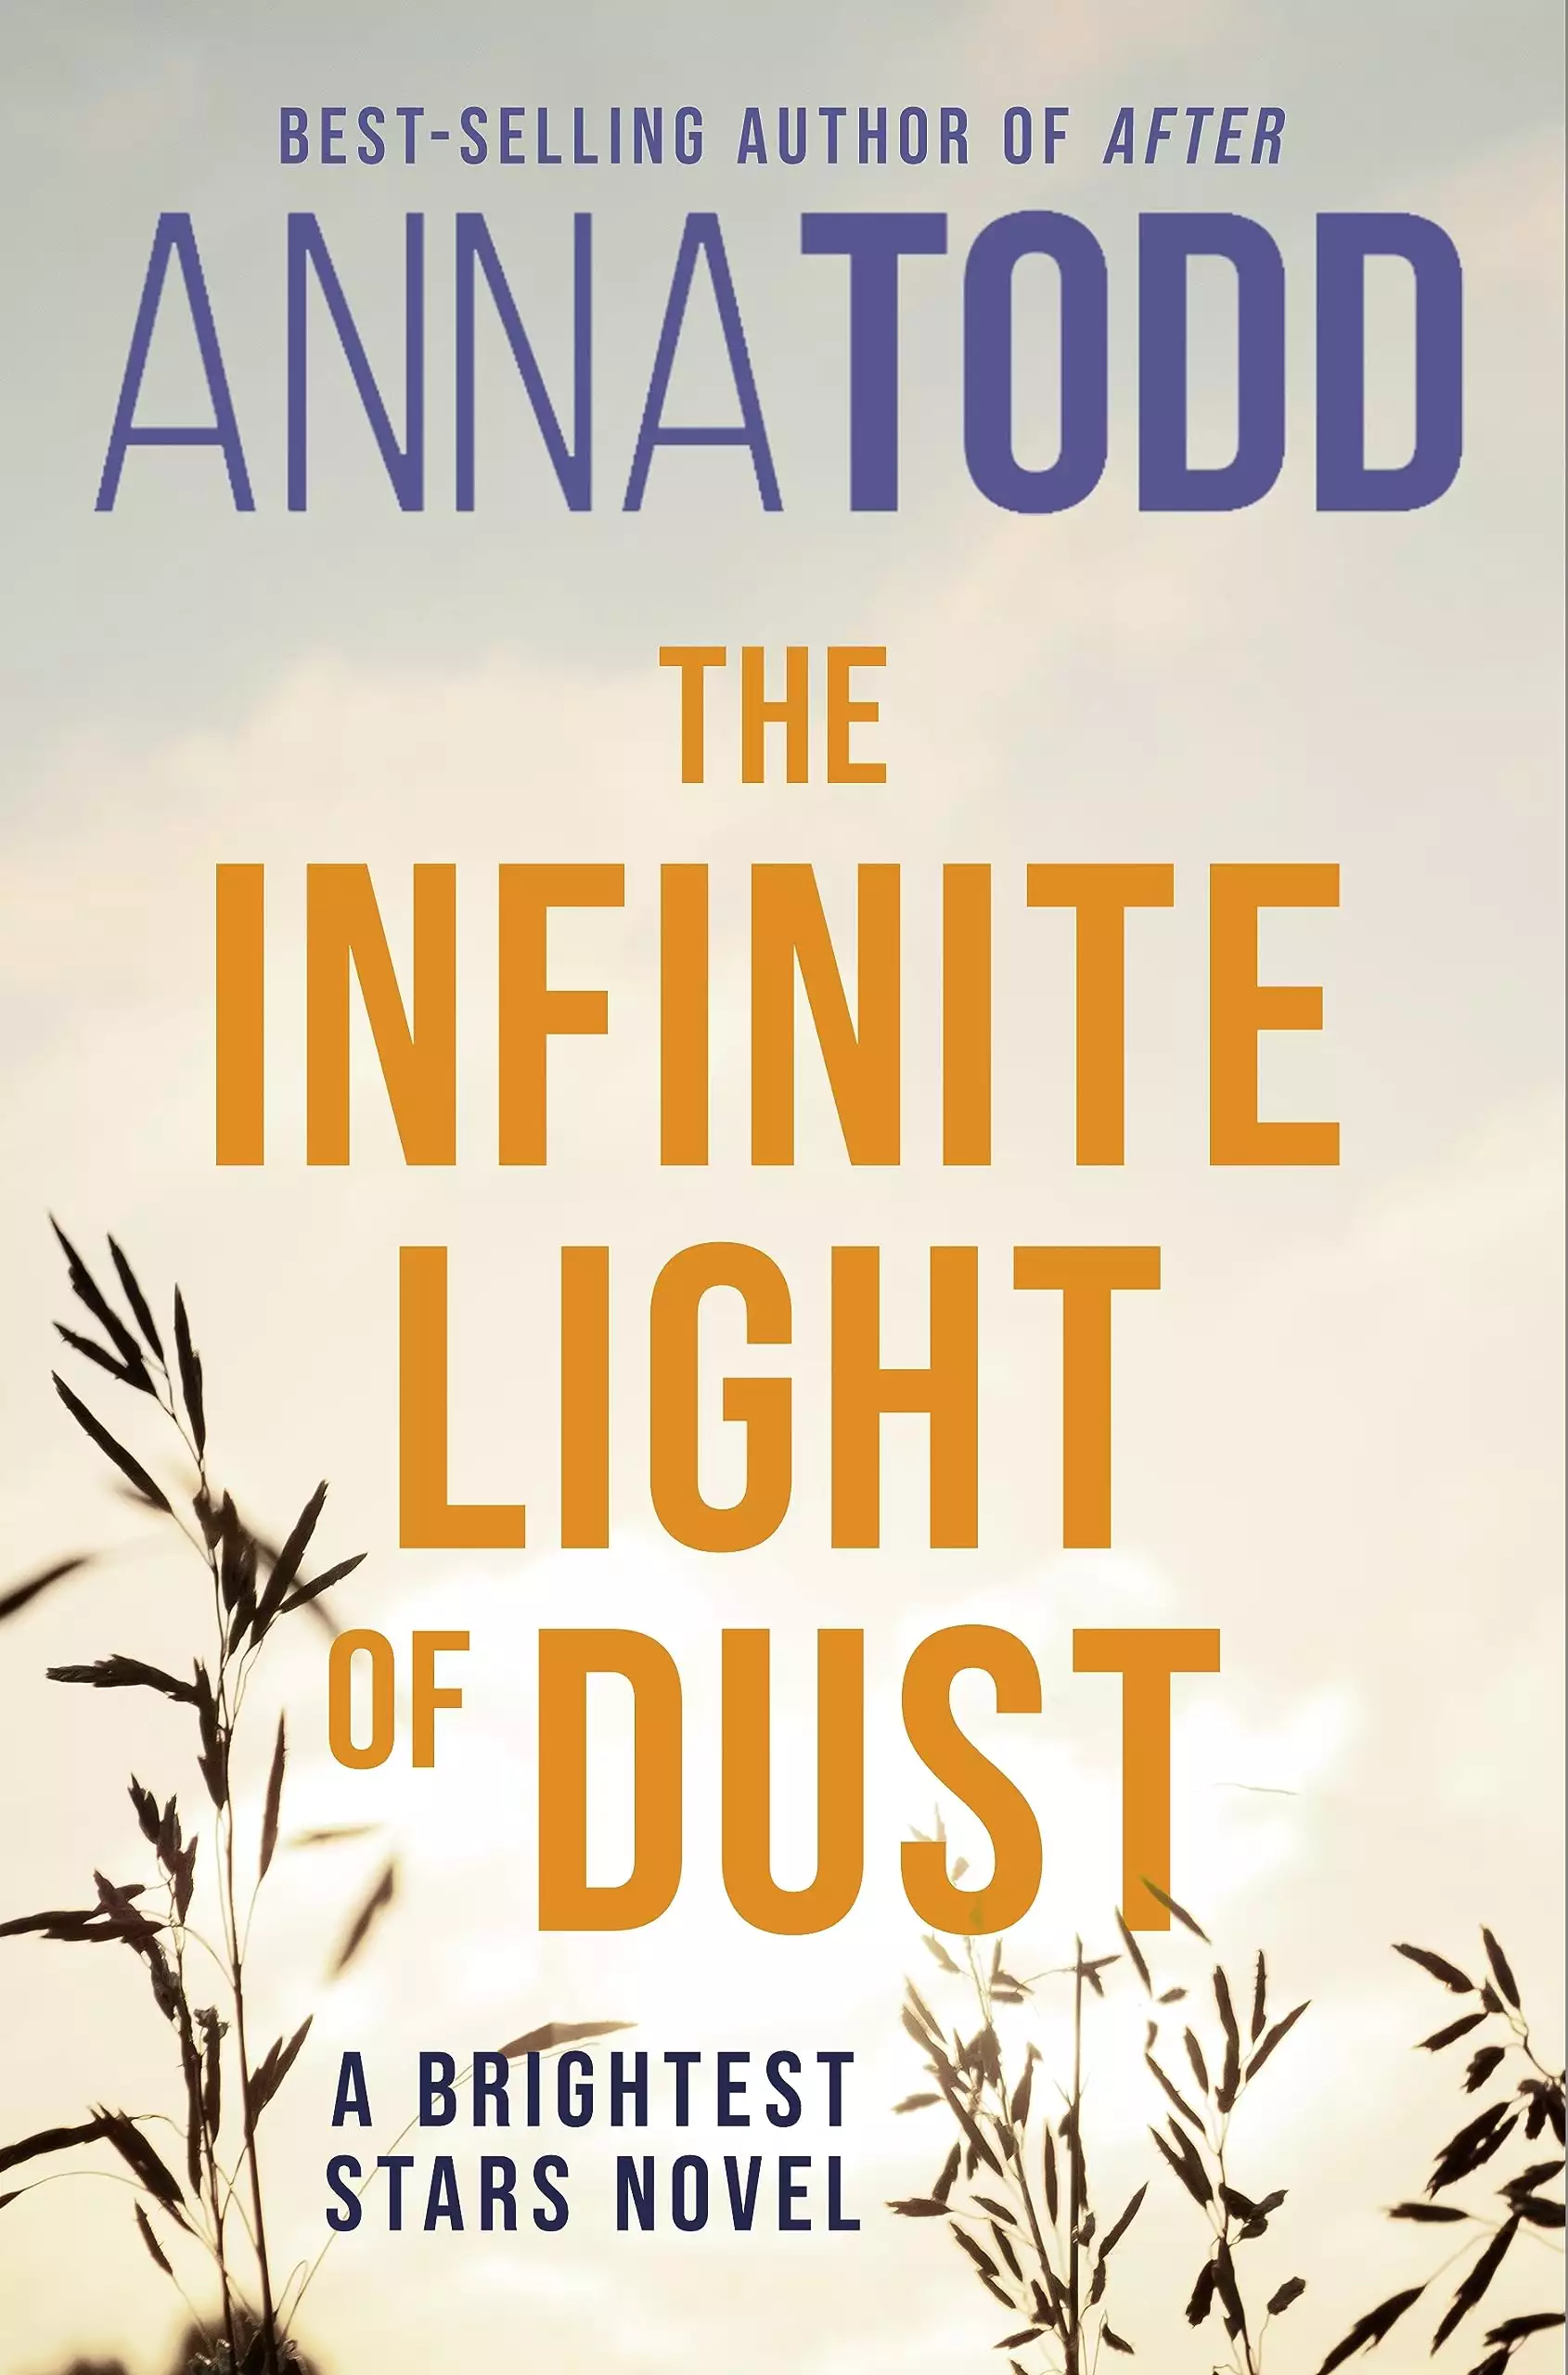 The Infinite Light of Dust